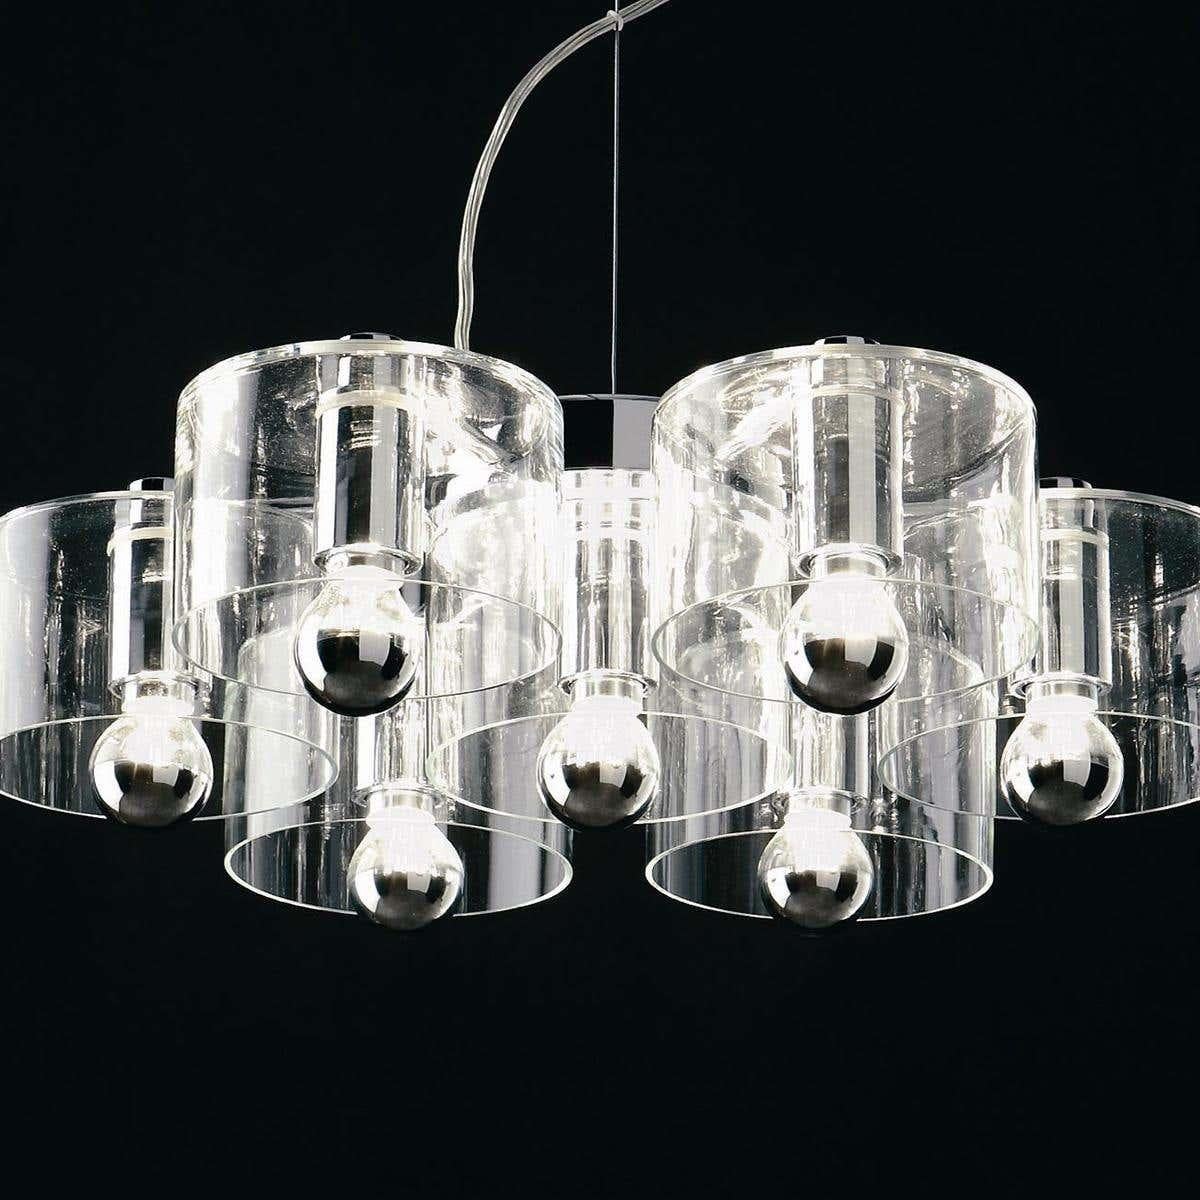 Contemporary Marta Laudani & MarCo Romanelli Suspension Lamp 'Fiore' 423 by Oluce For Sale